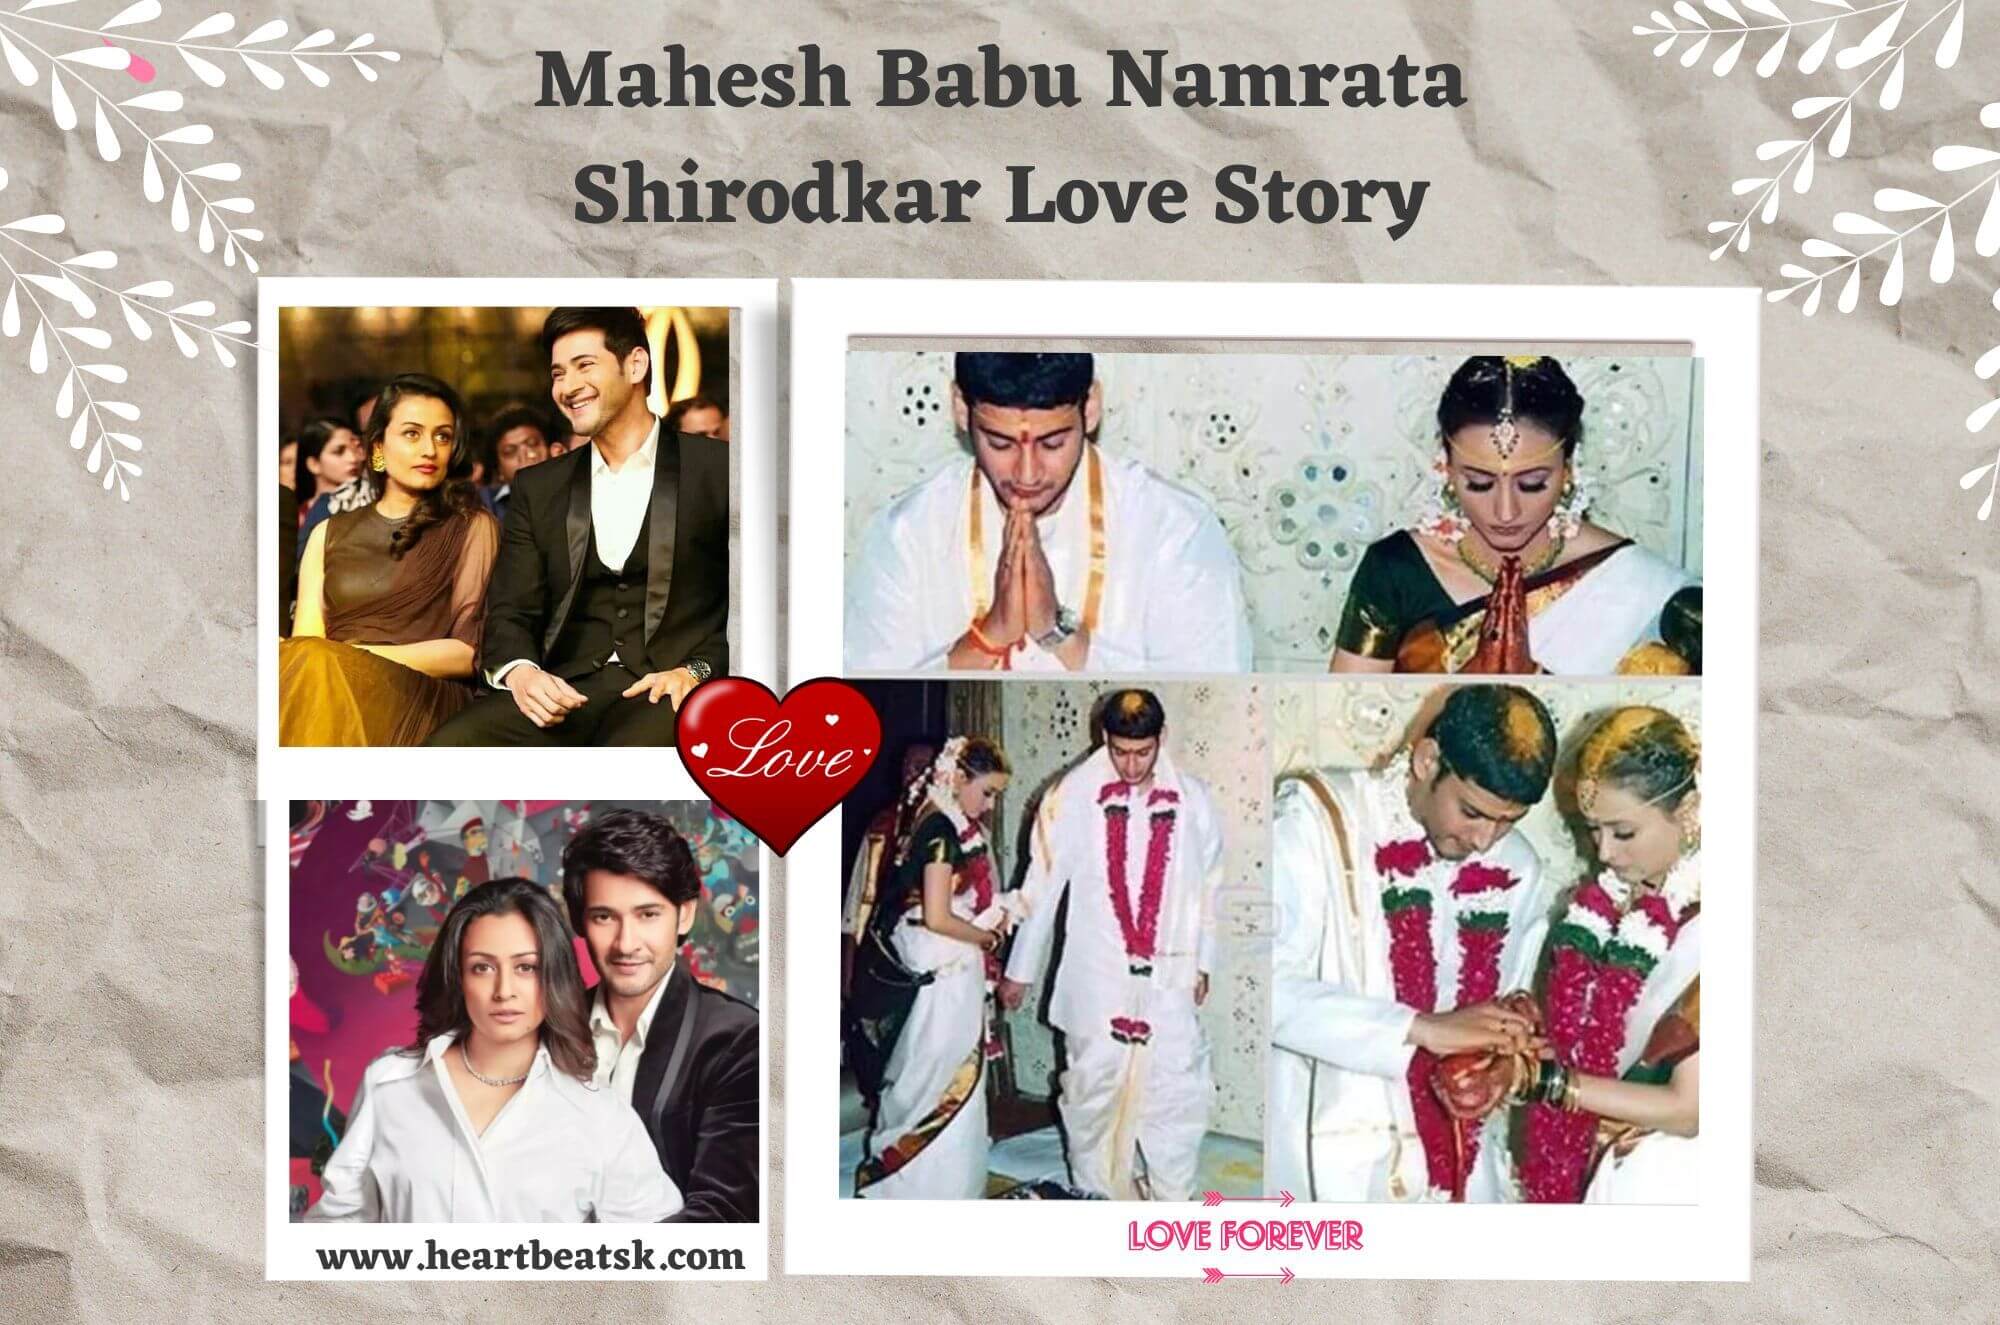 Mahesh Babu Namrata Shirodkar Love Story